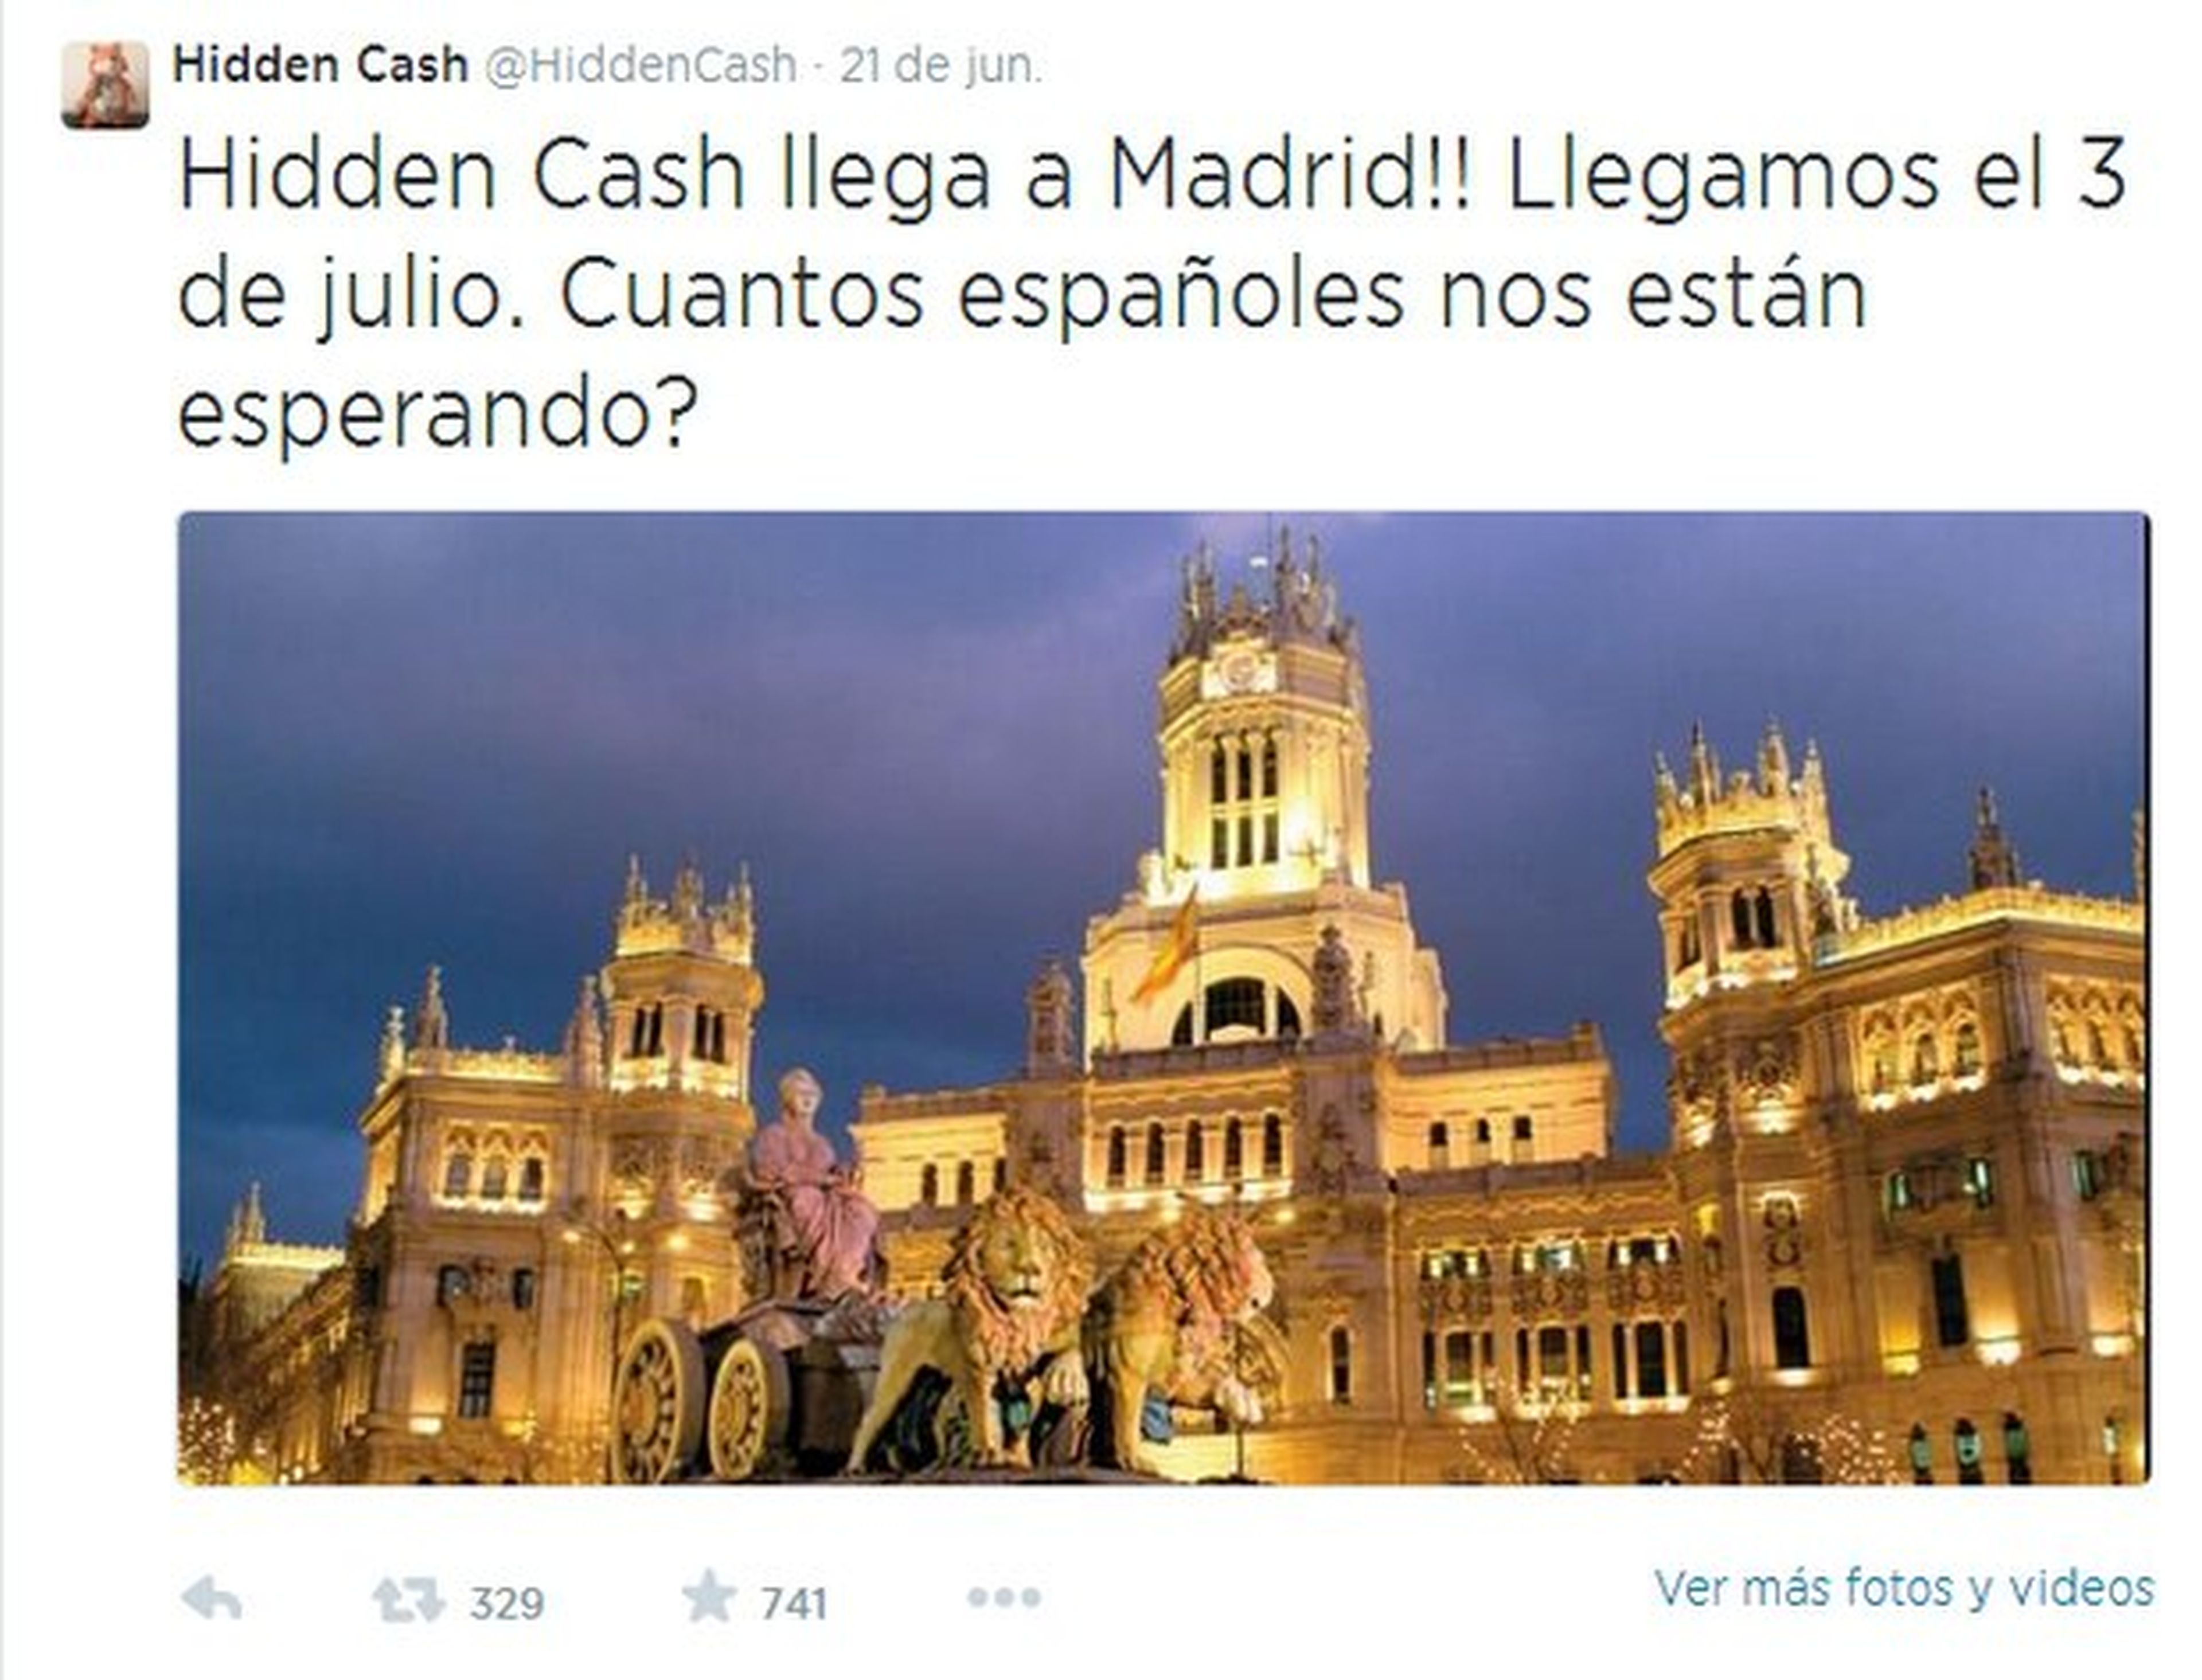 Millonario de @HiddenCash regalará dinero en Madrid el 3 de julio